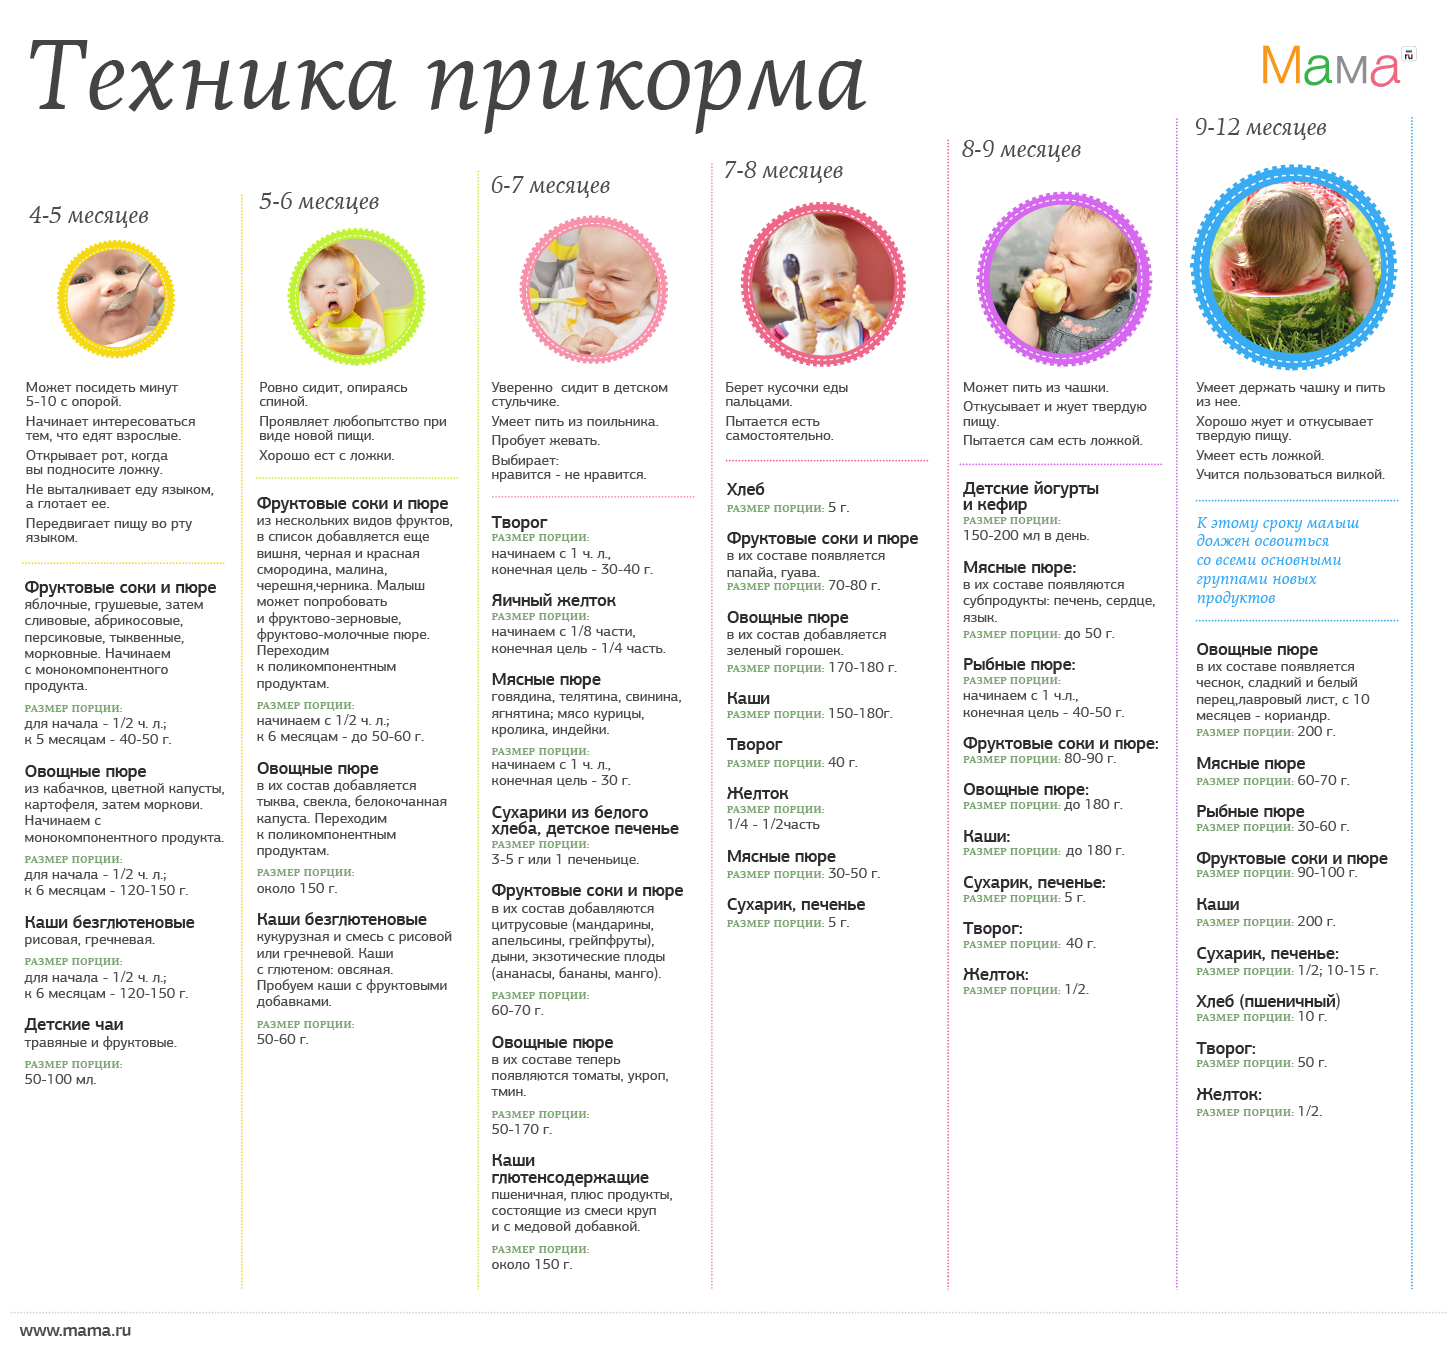 Схема введения прикорма детям